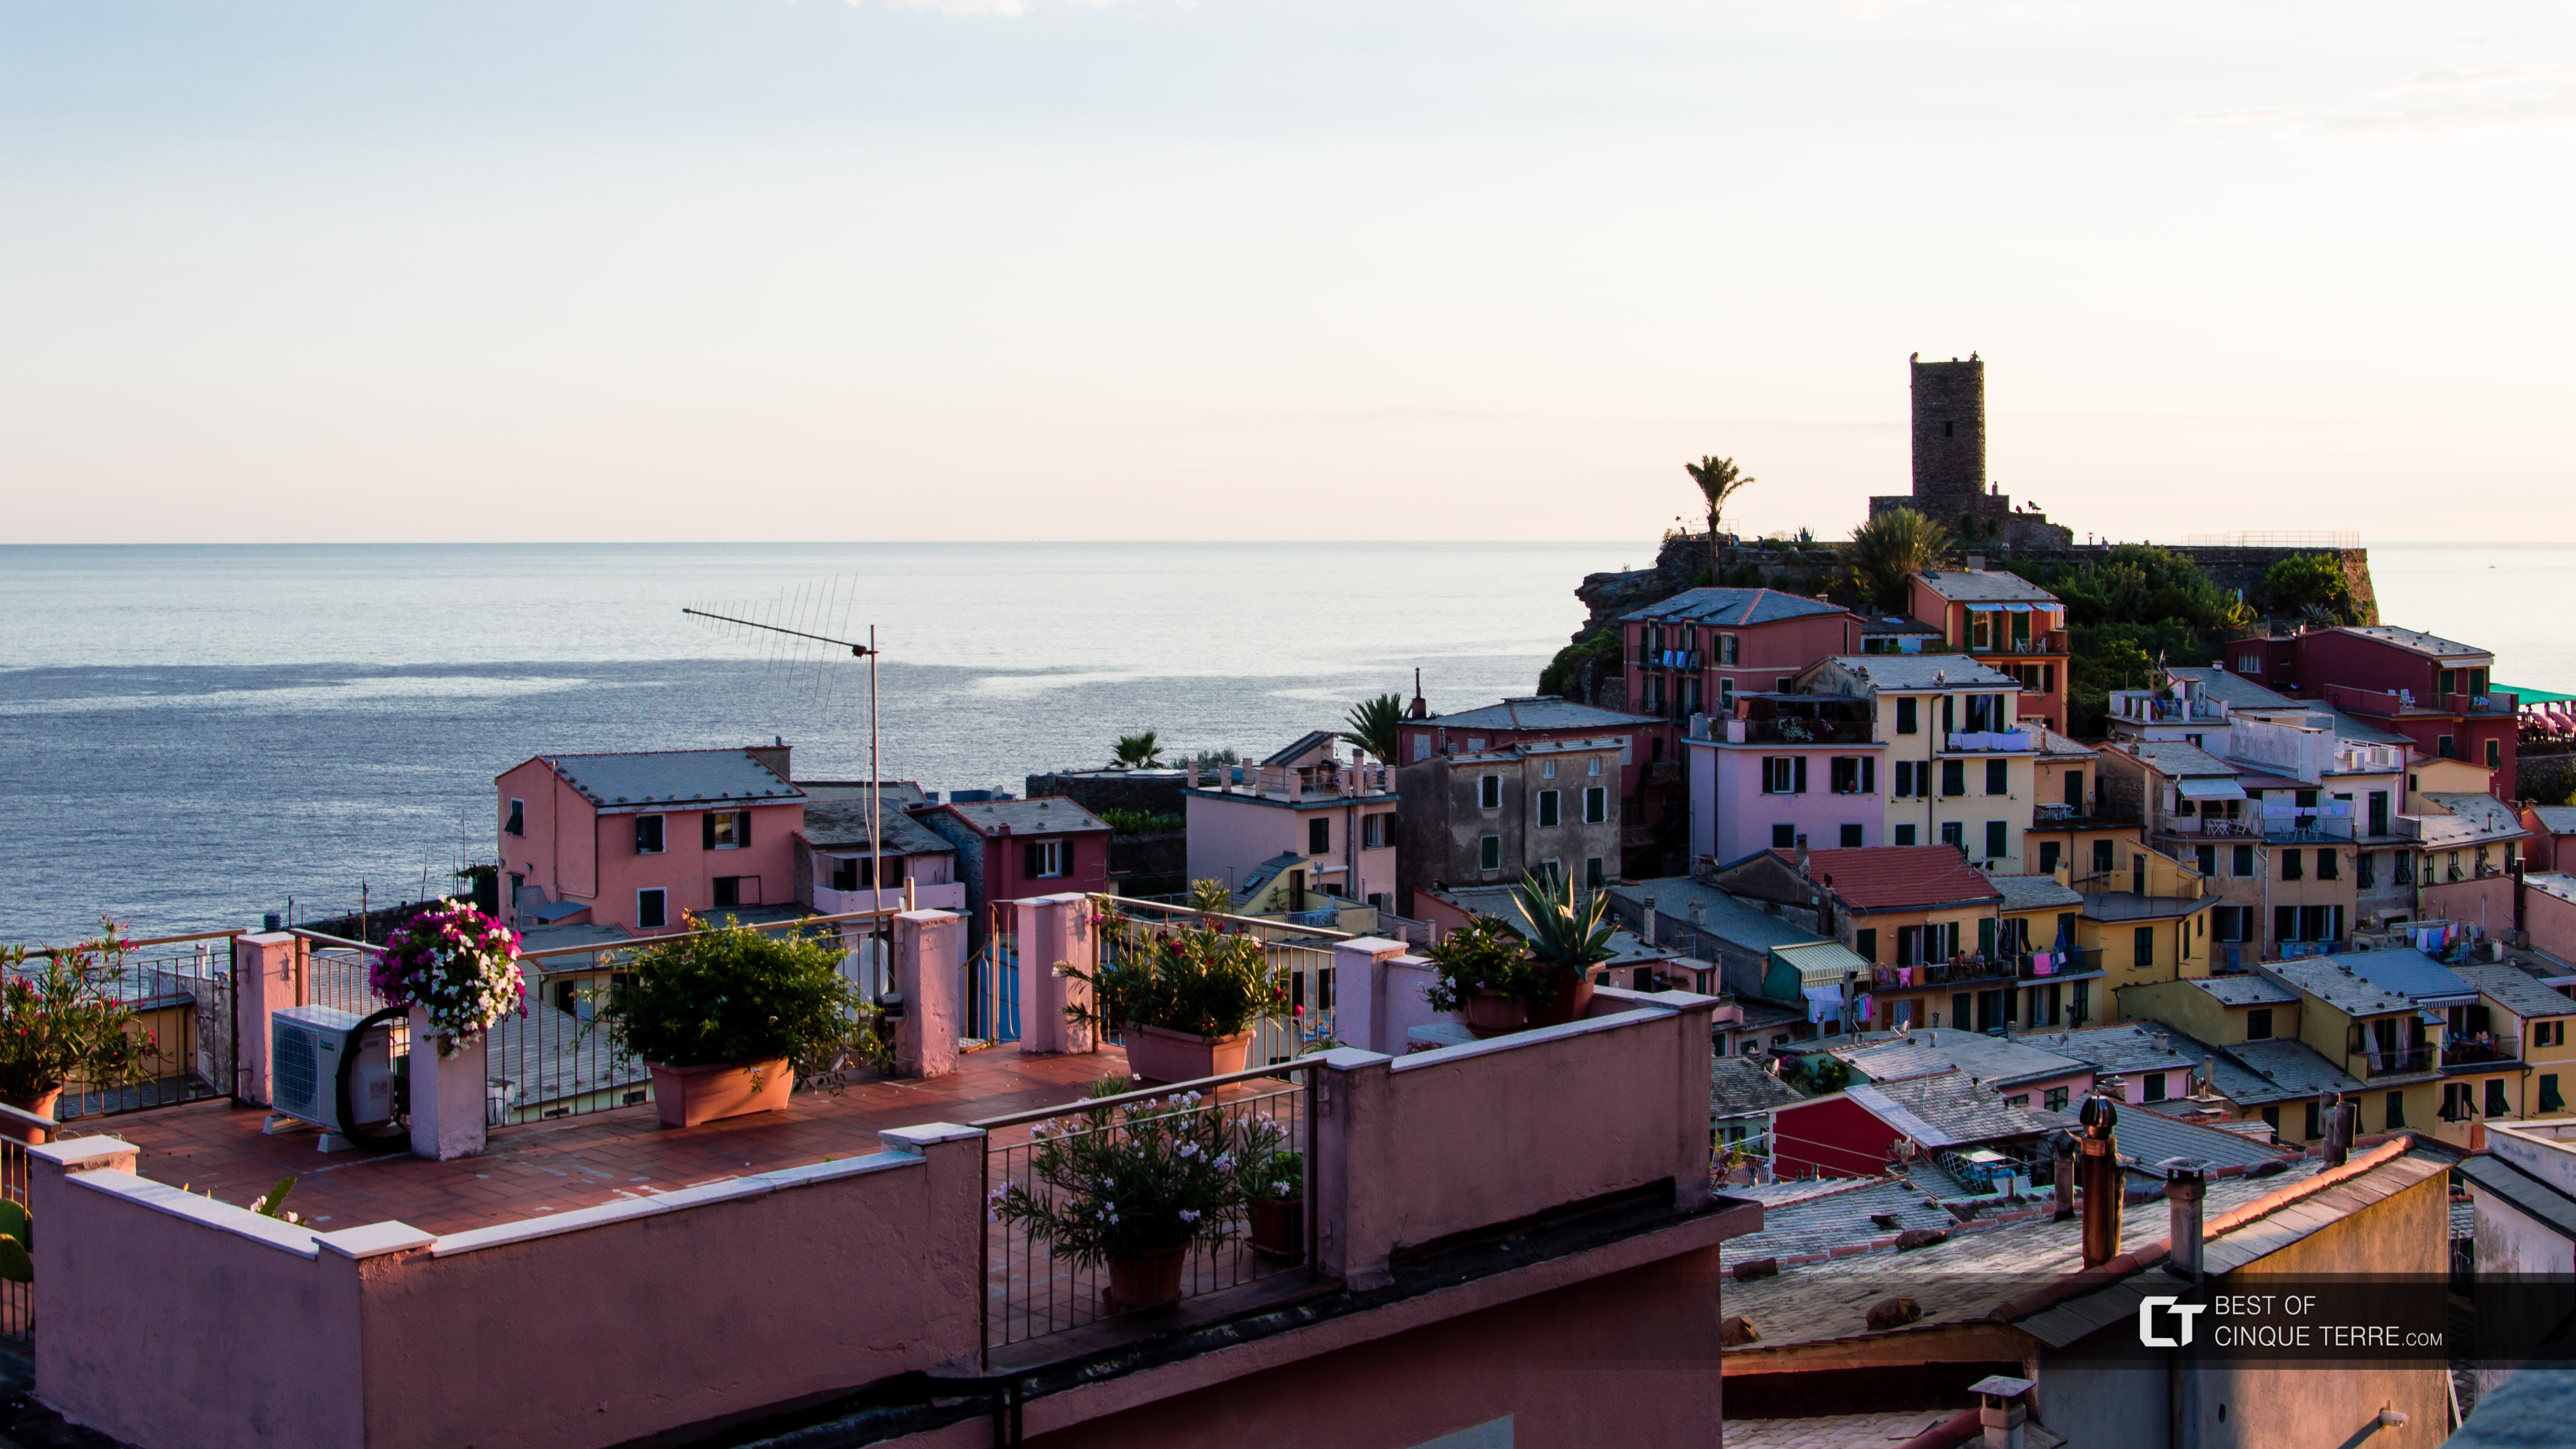 Techos de las casas, Vernazza, Cinque Terre, Italia